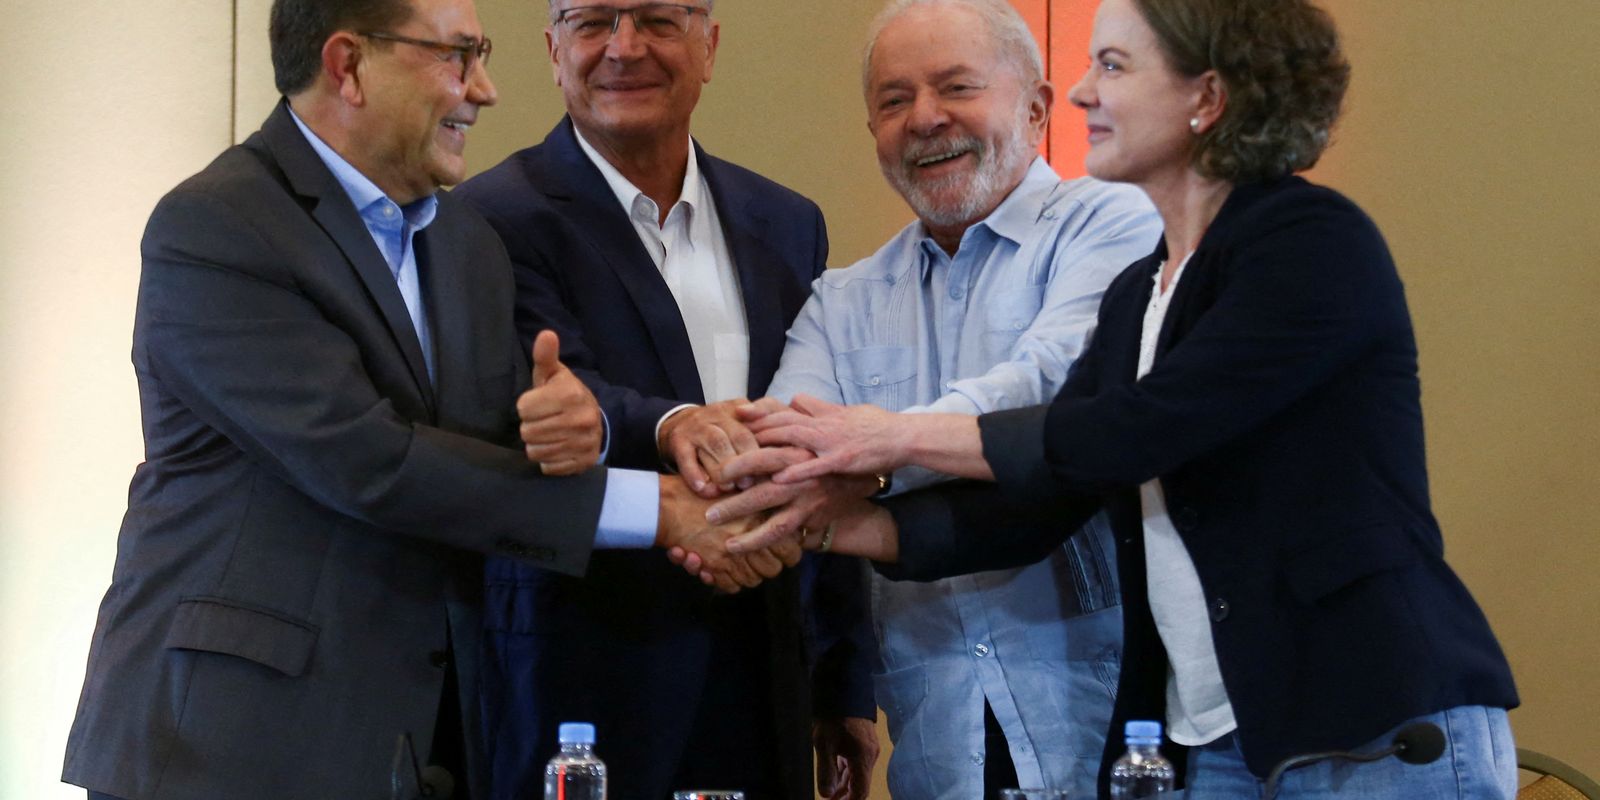 Brazils former President Lula announces his running mate for national elections, in Sao Paulo